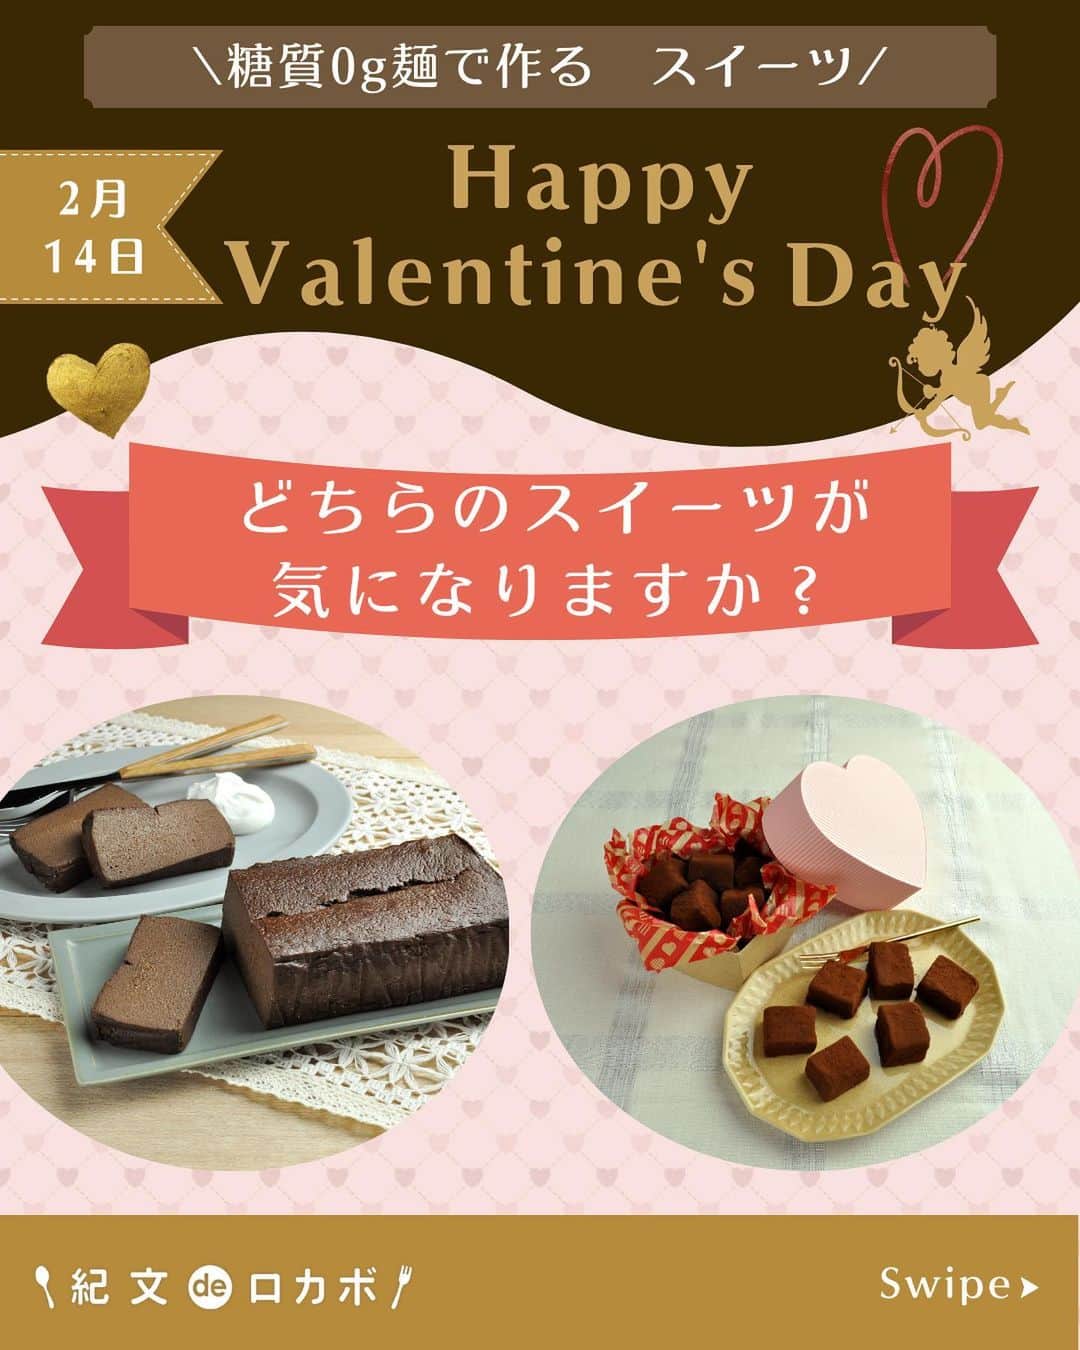 糖質0g麺 紀文deロカボのインスタグラム：「2月14日は、Happy Valentine’s day♡ チョコレート不使用??なのにあまーい！ みなさんは\どちらの糖質0ｇ麺スイーツ🍫気になりますか？/  もうすぐで、バレンタインデーですね！💖 ダイエット中で、チョコレートスイーツは、カロリーや糖質量が高くて食べられない・・・🥲って方！！ そんな方へ朗報です！！👀💡✨ ダイエット中で、ガマンしている方も このレシピなら、チョコレートスイーツが罪悪感ZEROで 食べられちゃいます🤭💫  どちらも濃厚でおいしいのに 一口食べれば とろけて幸せ😇💖 し・か・も、 糖質量は 【糖質0g麺で作るテリーヌショコラ風】＝糖質量4.6g（1切れ分） 【糖質0g麺の生チョコ風】＝糖質量 2.8ｇ（1個分）  これなら、夢のまるごと食べもＯＫですね！😁🖐️ 普段がんばっている自分へのご褒美や 大切な人へのプレゼント🎁にいかかでしょうか？  ①#糖質0g麺で作るテリーヌショコラ風　が気になる方 →コメントに「赤の❤️」  ②#糖質0g麺の生チョコ風　が気になる方 →コメントに「紫の💜」  ぜひ、みなさんからのコメントお待ちしております♪  #糖質0g麺#糖質0g麺丸麺 #糖質0g麺 #紀文deロカボ#紀文食品 #紀文#kibun #低カロリー麺#ヘルシー麺#低糖質麺#ロカボダイエット#ロカボ麺 #低糖質#ダイエット#食物繊維 #ローカーボー#ボディメイク#糖質制限食 #糖質オフ#テリーヌ#生チョコ #ダイエットレシピ#小麦粉不使用 #チョコレート#バレンタイン#バレンタインレシピ #デコレーション#手づくり#2月14日 .｡.:*:.｡.❁.｡.:*:.｡.✽.｡.:*:.｡.❁ お気に入りや作ってみたいと思ったレシピは、右下の「保存」ボタンをタップしておくと便利です😊❣️  作ったら #紀文deロカボ や @kibun_0gmen をつけて、写真を投稿し教えてください♪ 投稿は公式アカウントにて紹介させていただくことがあります。ぜひ皆さまの素敵な投稿お待ちしております!!  ↓他にもレシピを紹介しているので、ぜひチェックしてみてください↓ @kibun_0gmen  .｡.:*:.｡.❁.｡.:*:.｡.✽.｡.:*:.｡.❁」